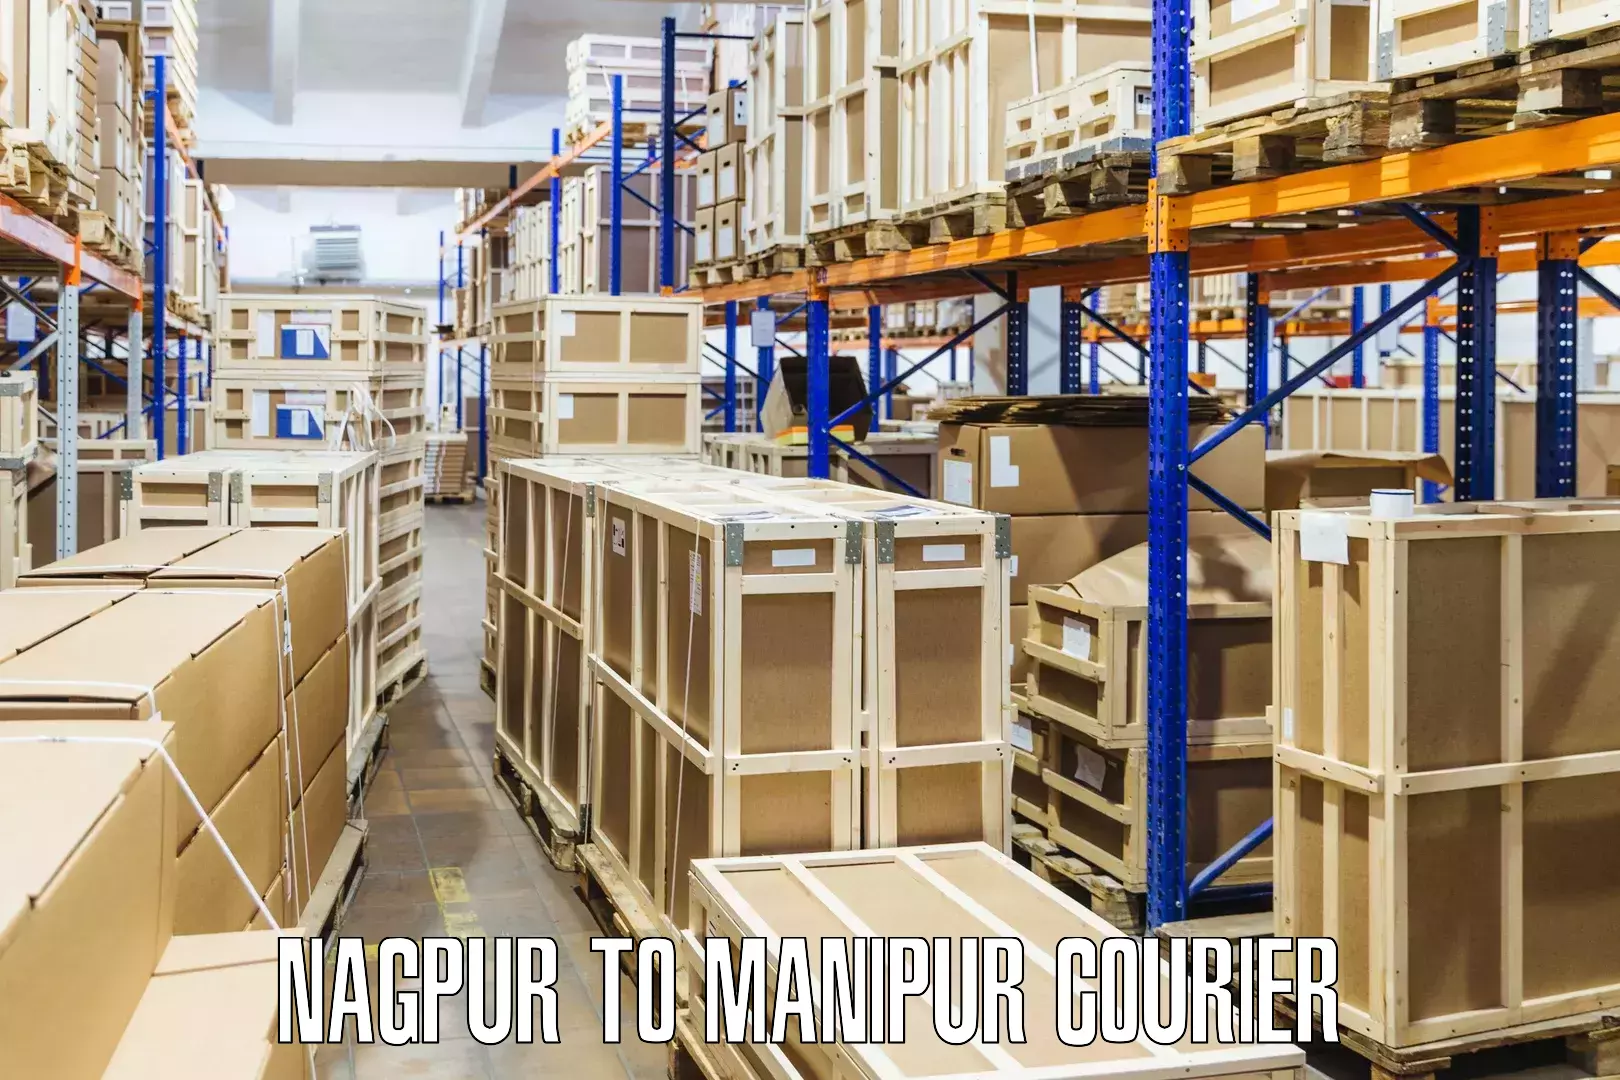 Premium courier services Nagpur to Chandel